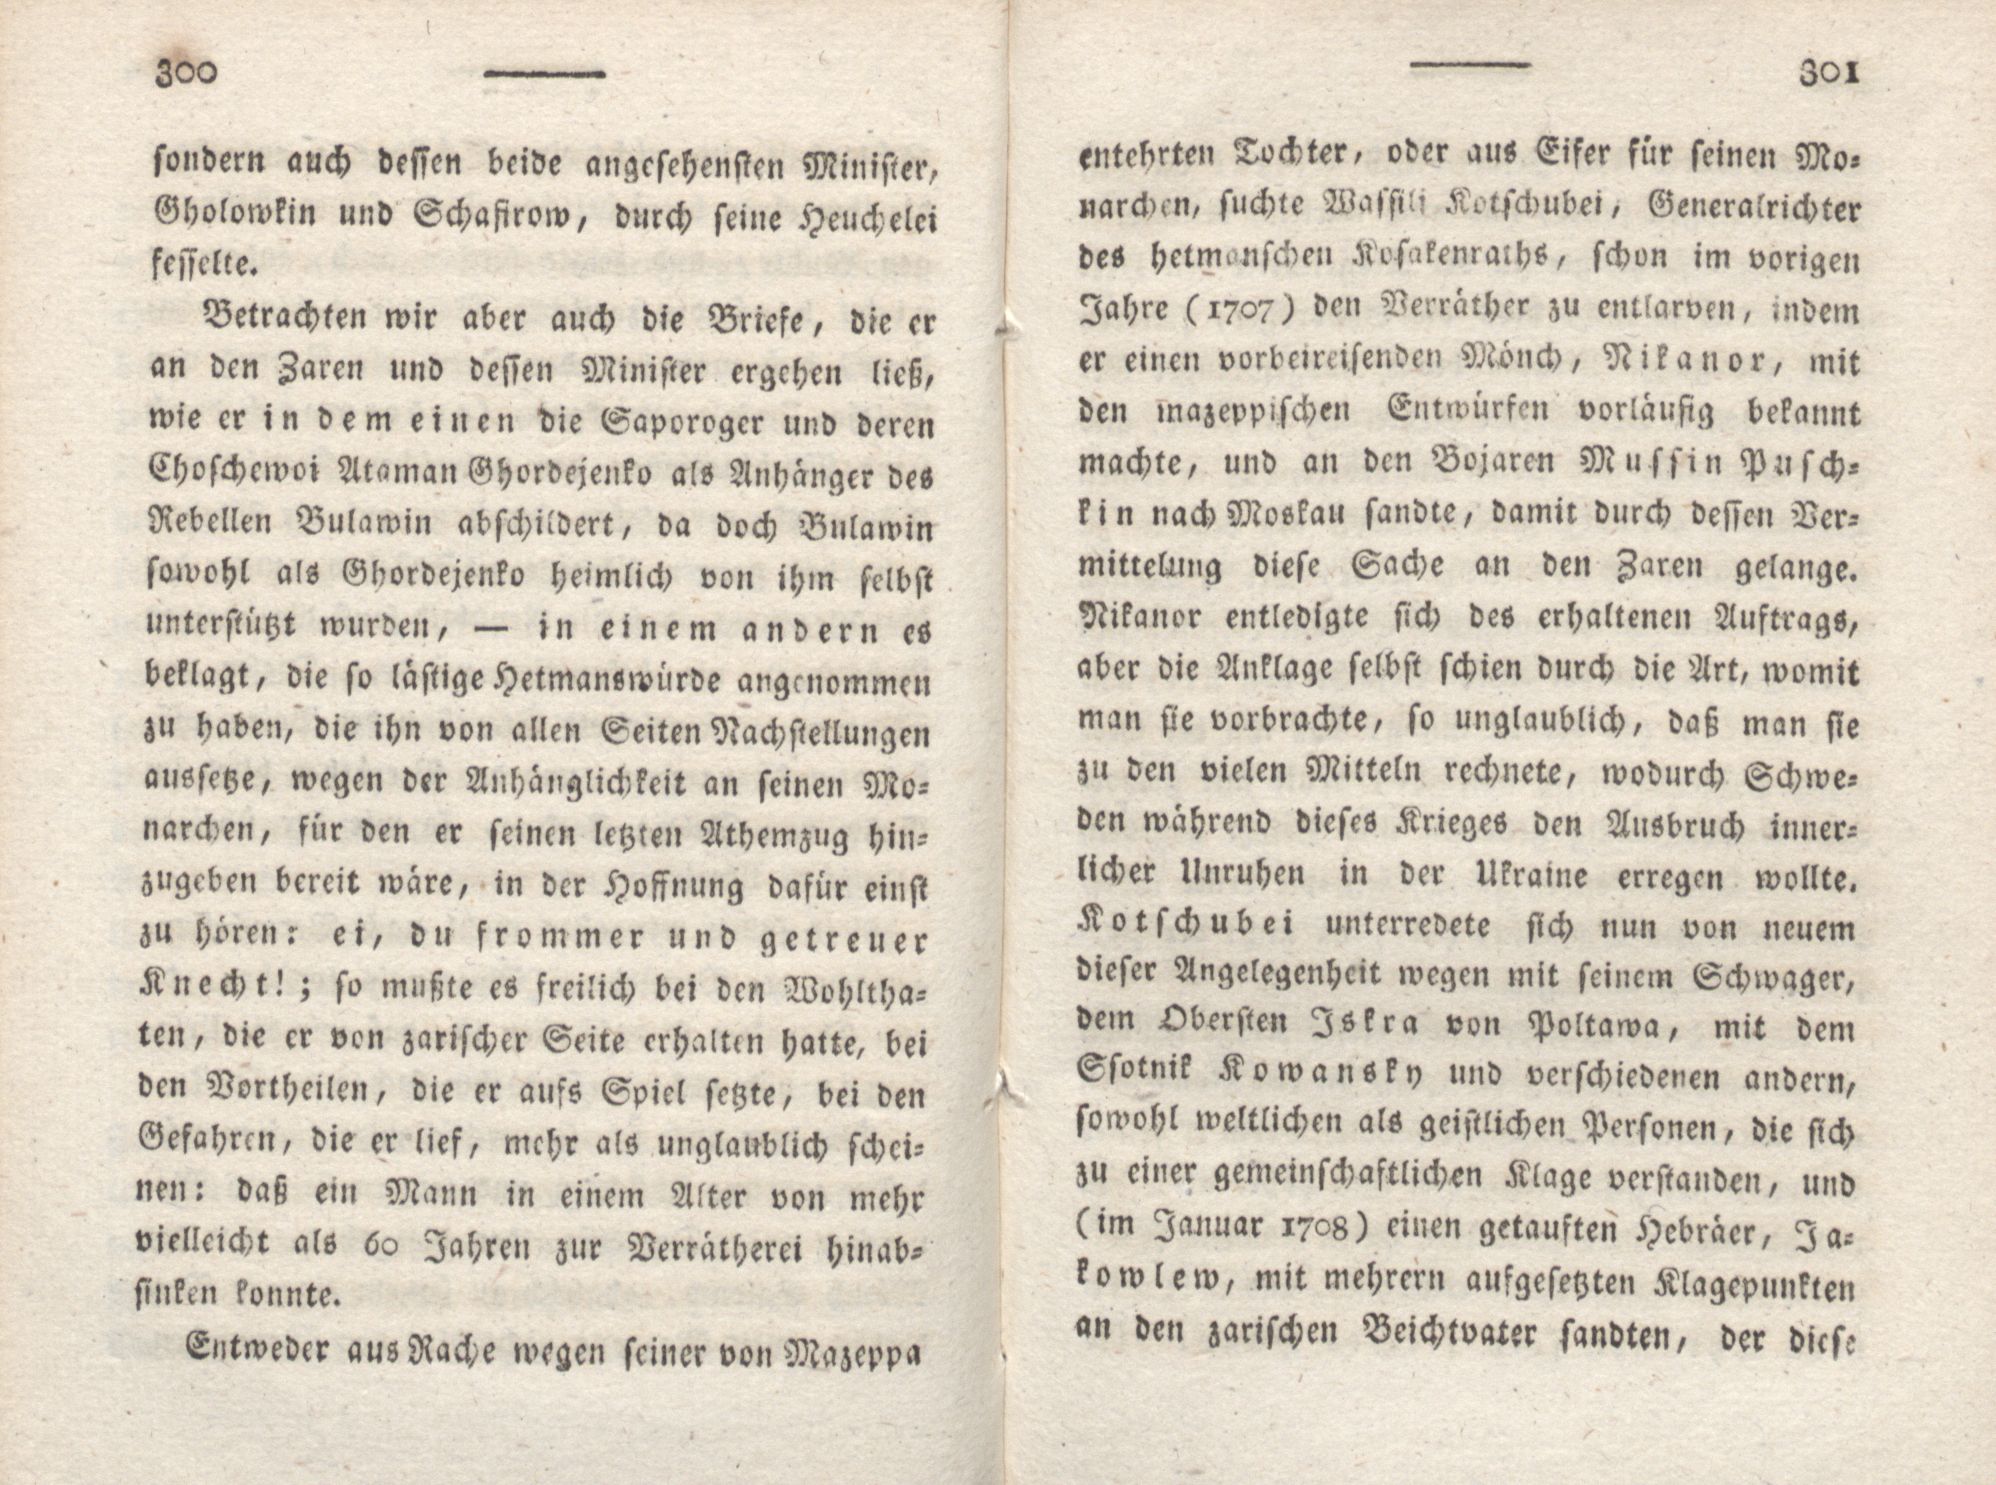 Livona [2] (1815) | 175. (300-301) Main body of text